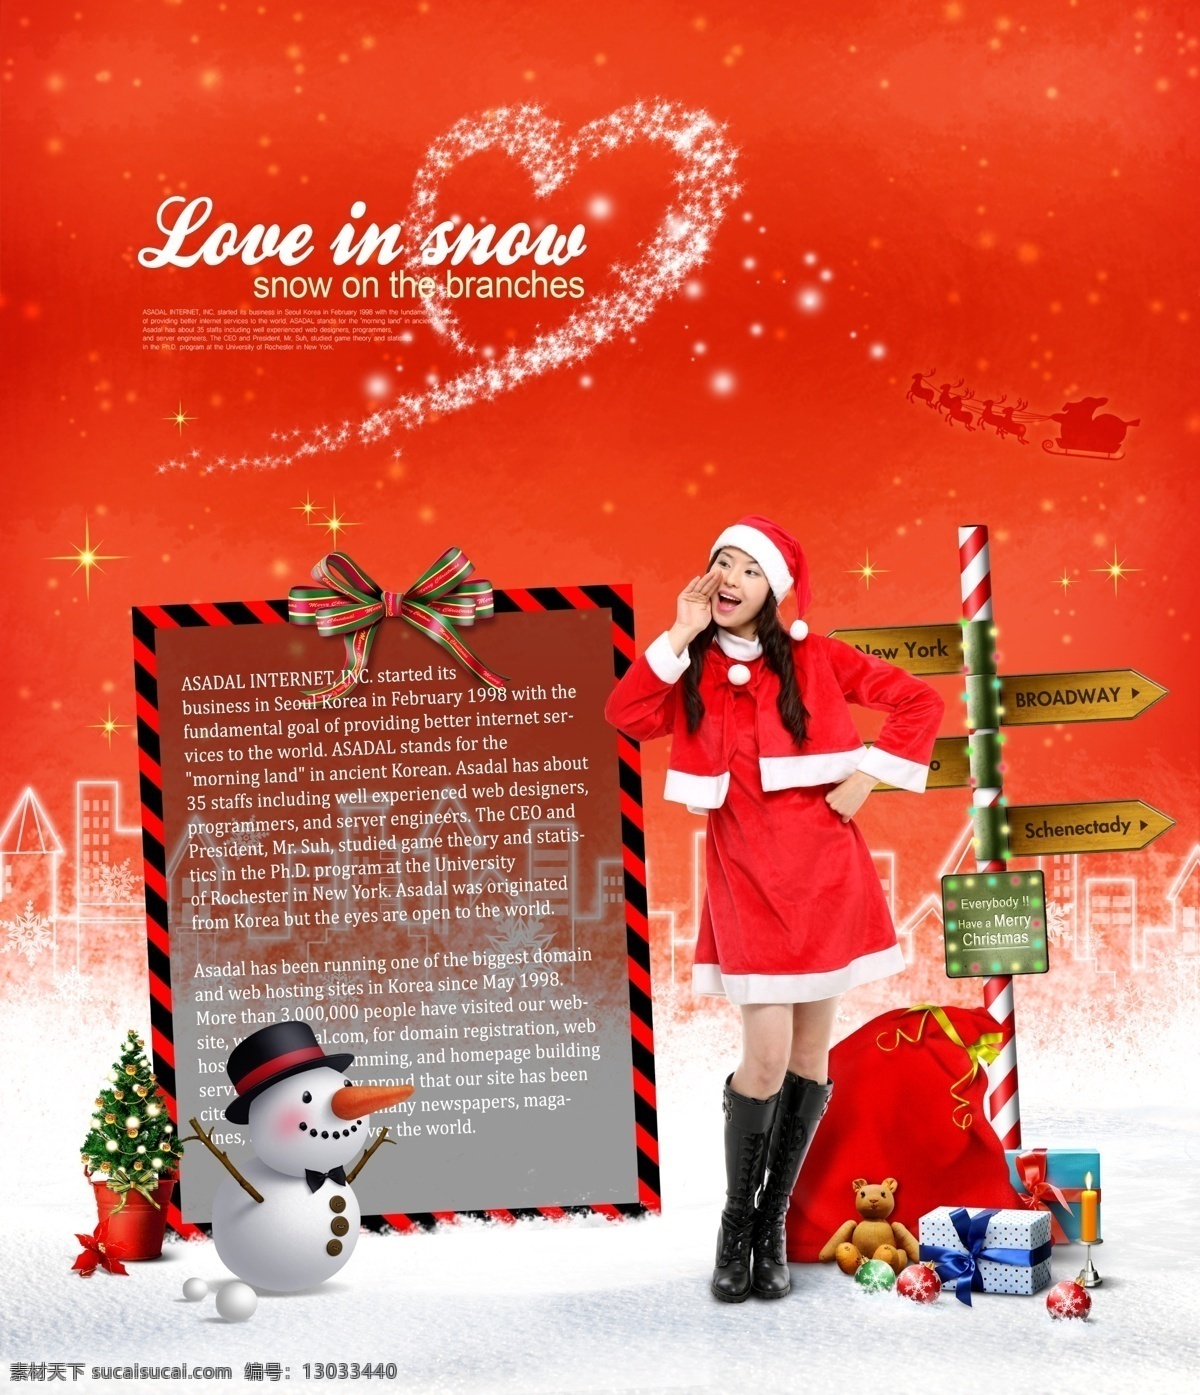 圣诞 女孩 指路牌 psd素材 广告模板 礼物 圣诞背景 圣诞节背景 圣诞老人 圣诞礼物 圣诞女孩 雪人 psd源文件